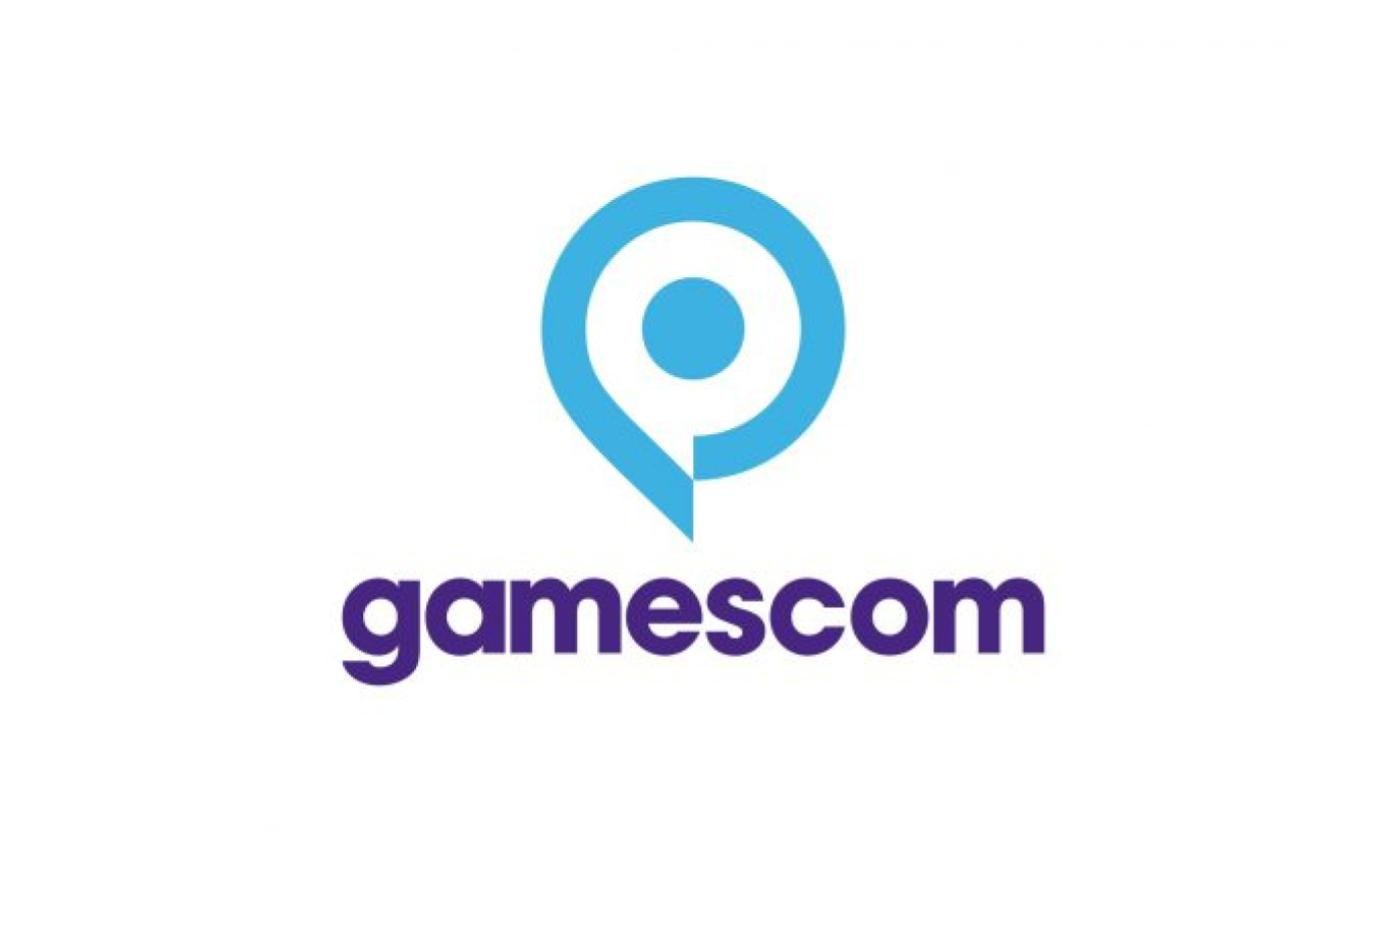 Gamescom 2021